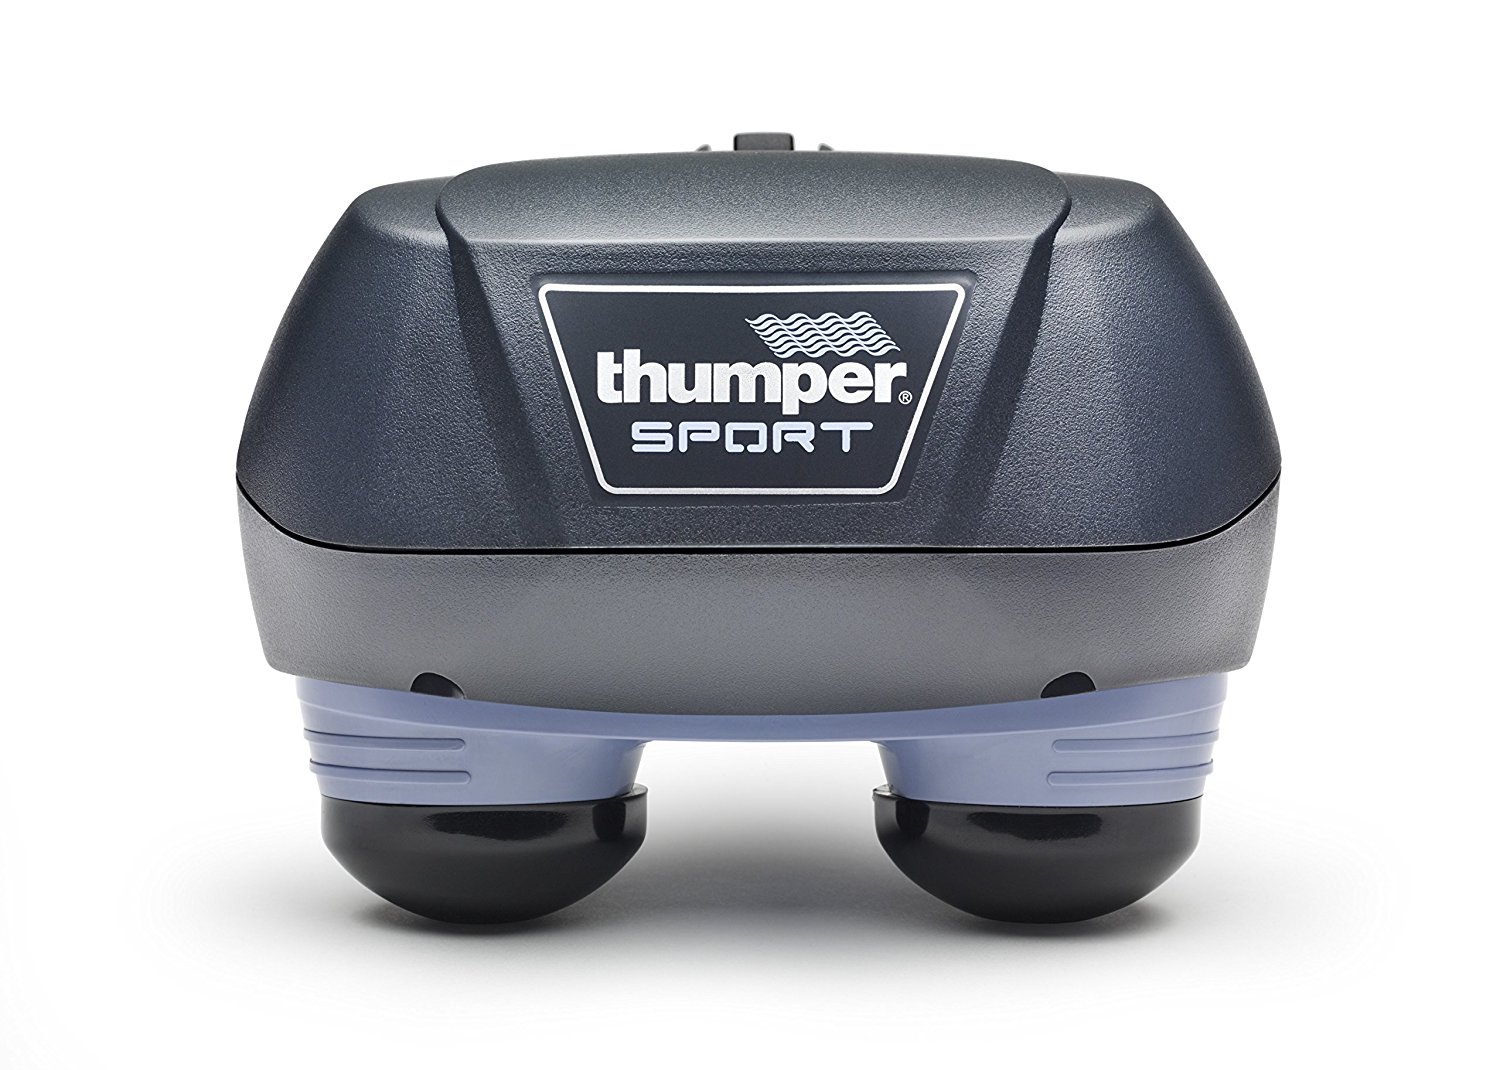 Thumper E501 percussion massager